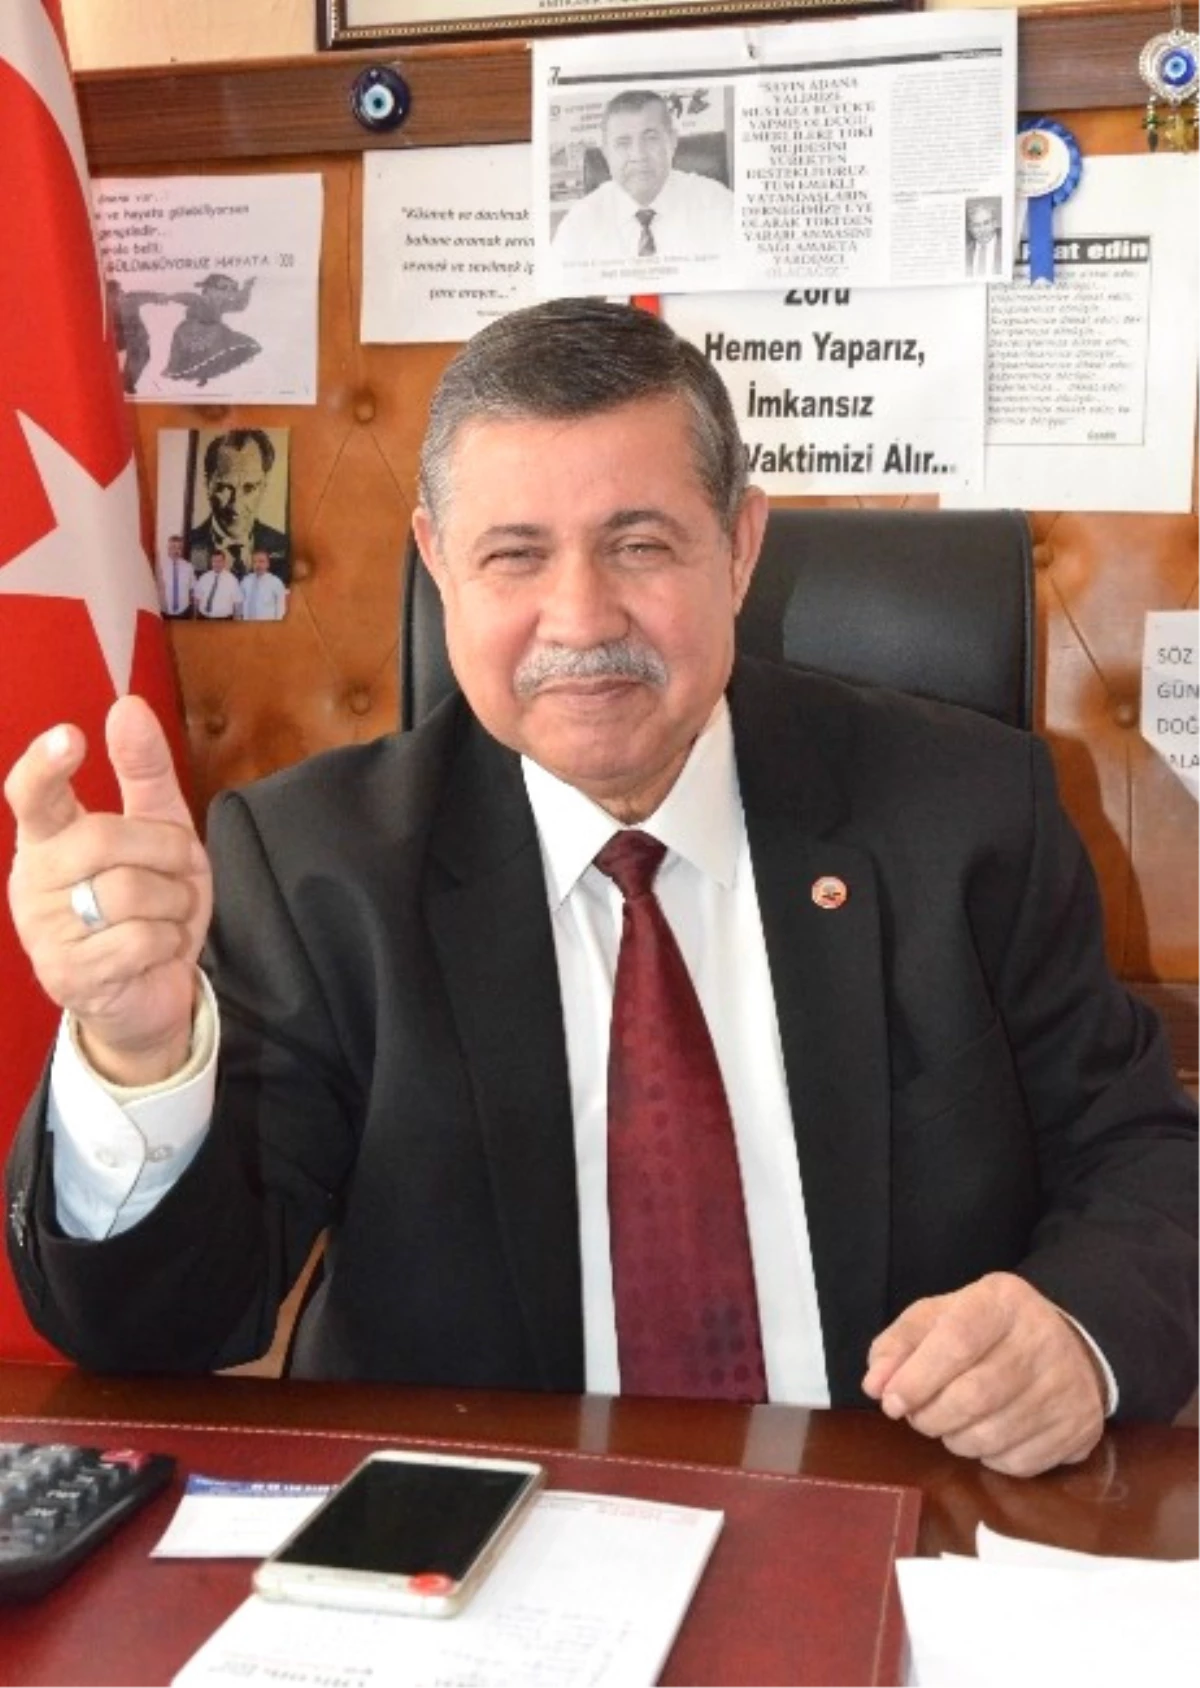 Tüed Adana Şube Başkanı İyiyürek: "İntibak İçin Bireysel Dava Açmayın"